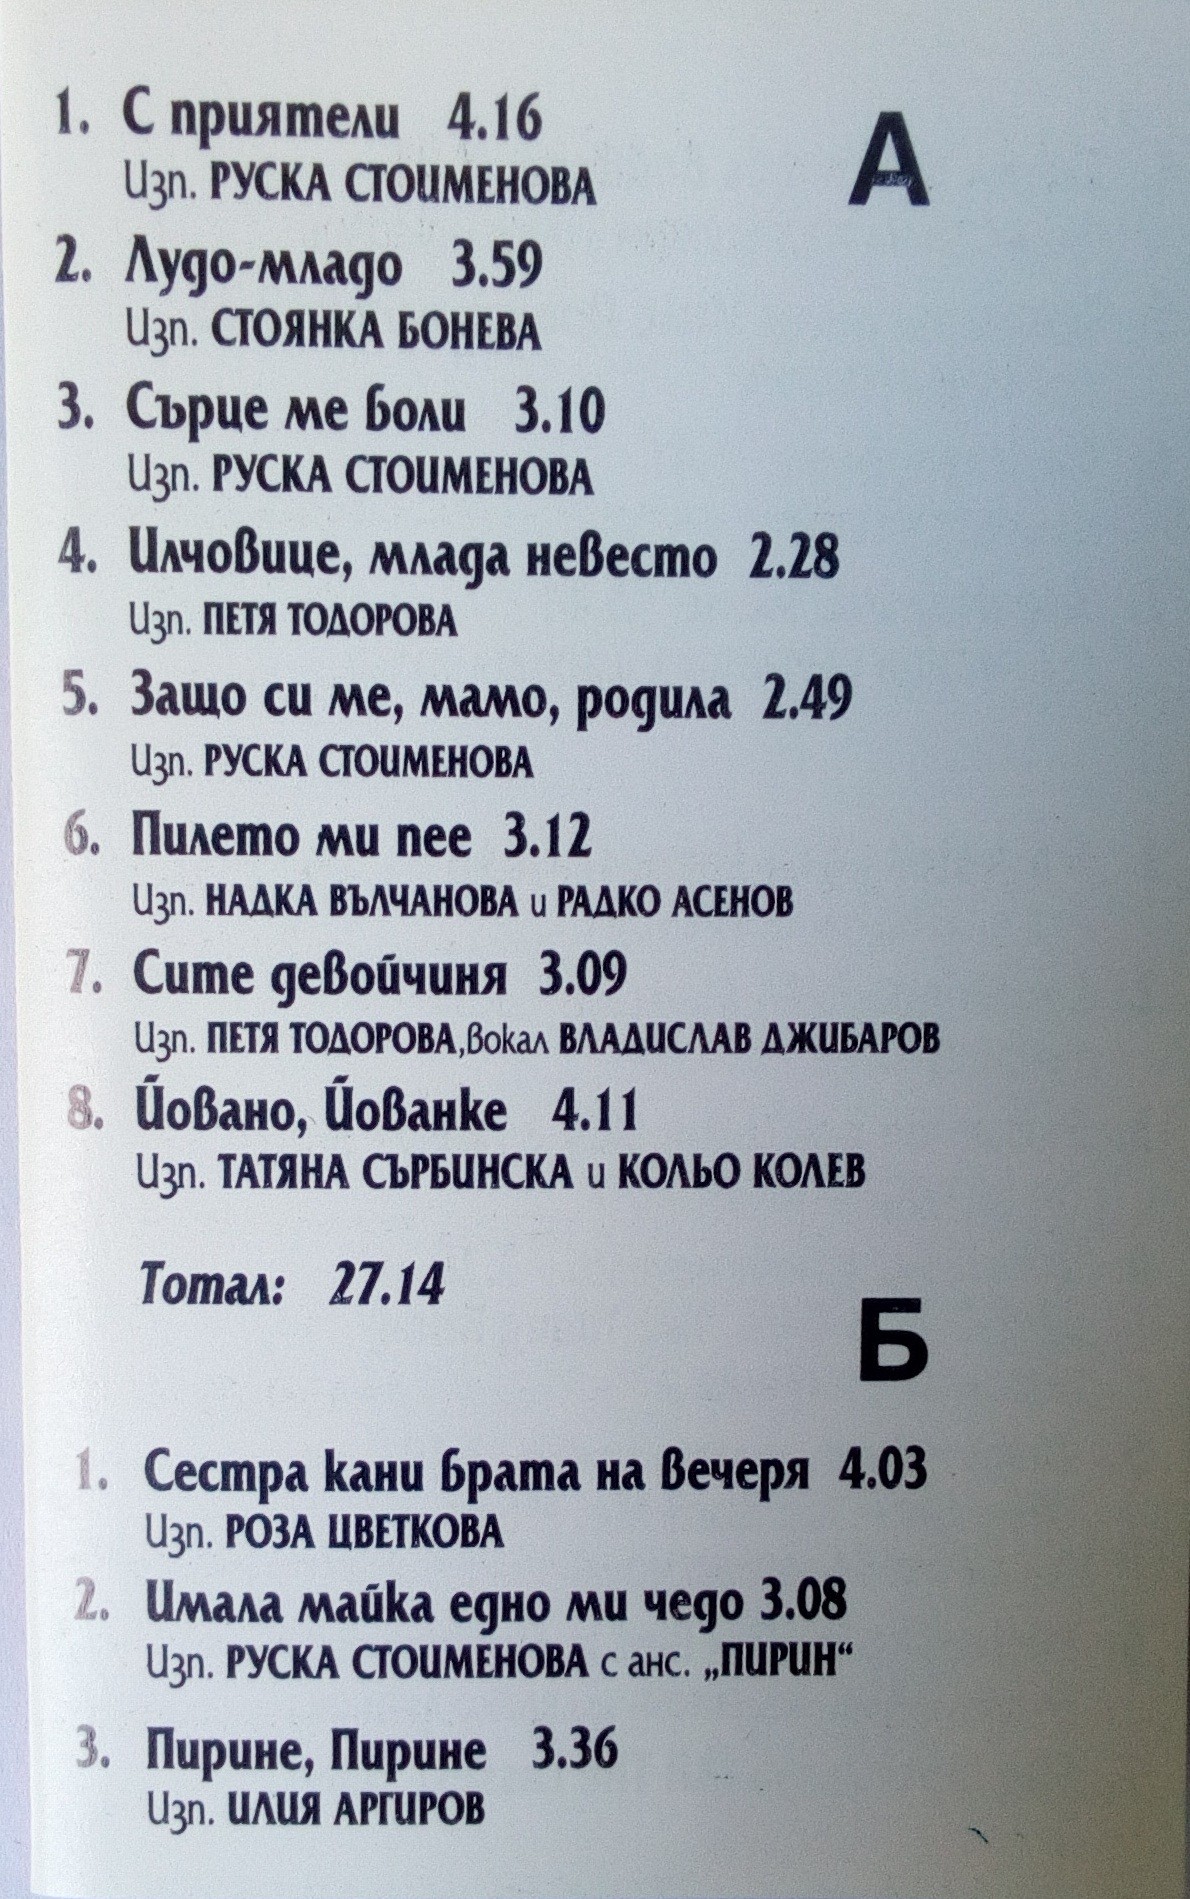 Македонски песни